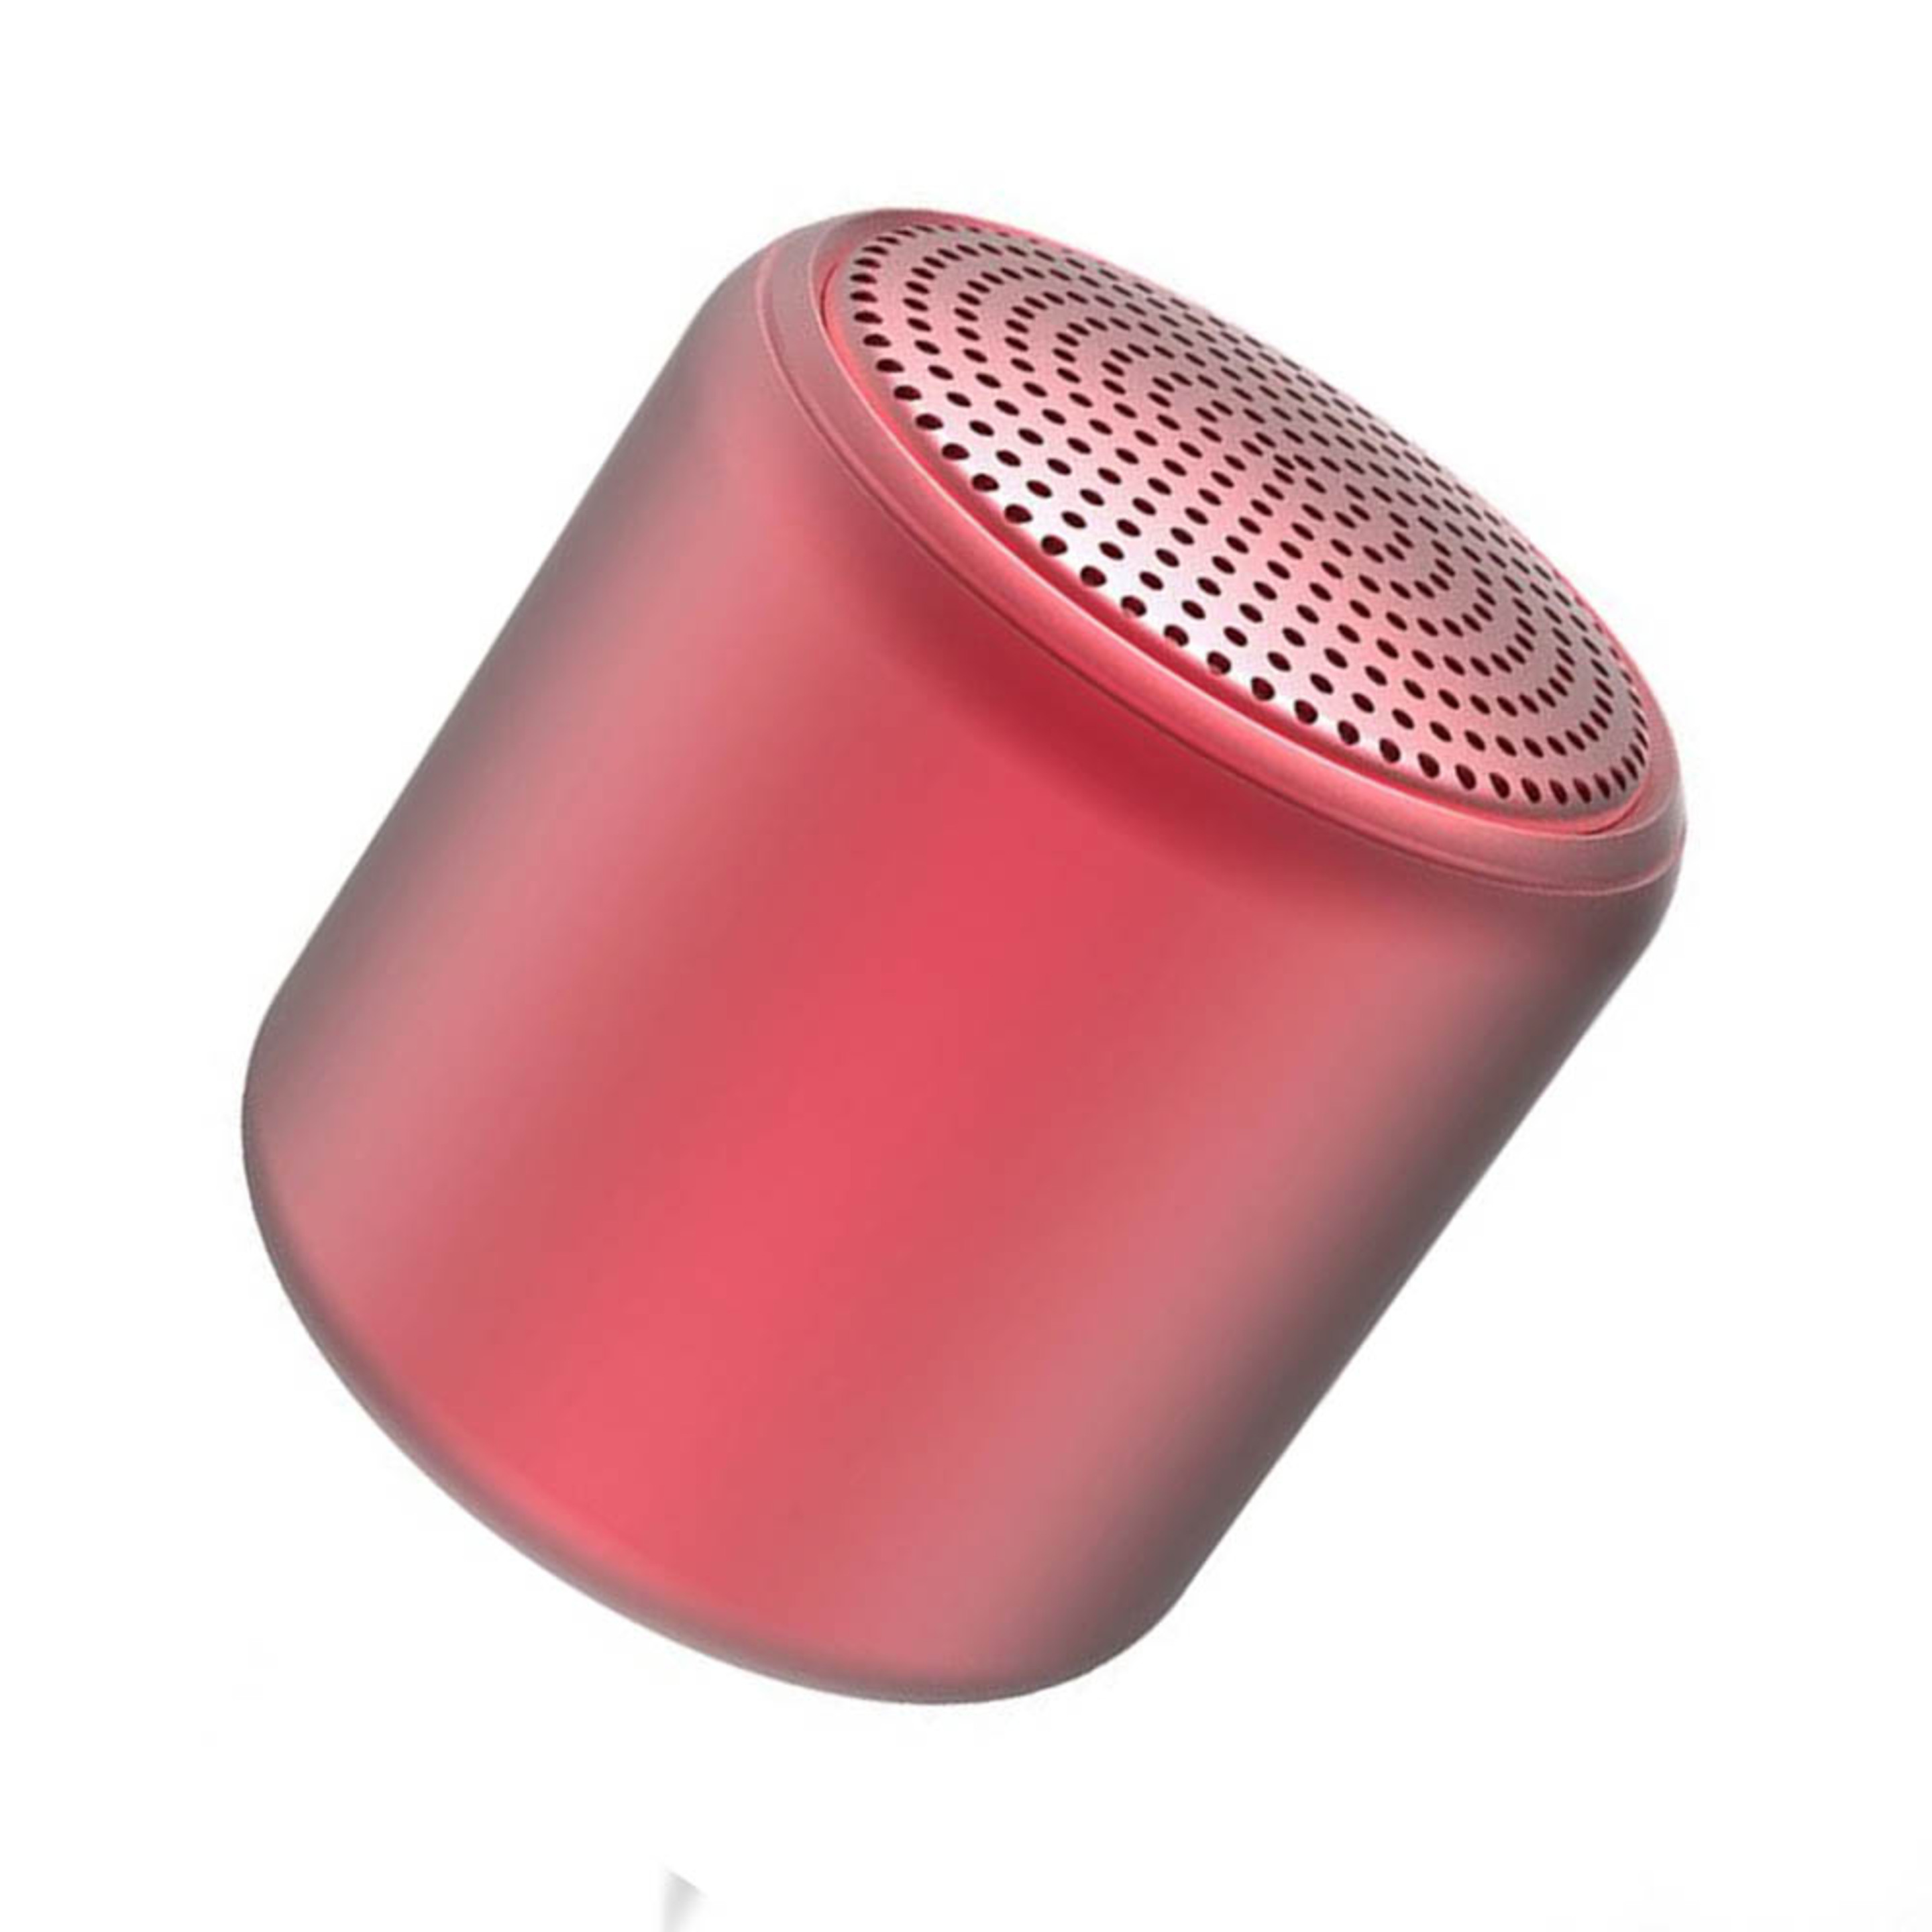 Altavoz Bluetooth Inalambrico - Rojo - compatible con Apple Xiaomi Huawei  MKP